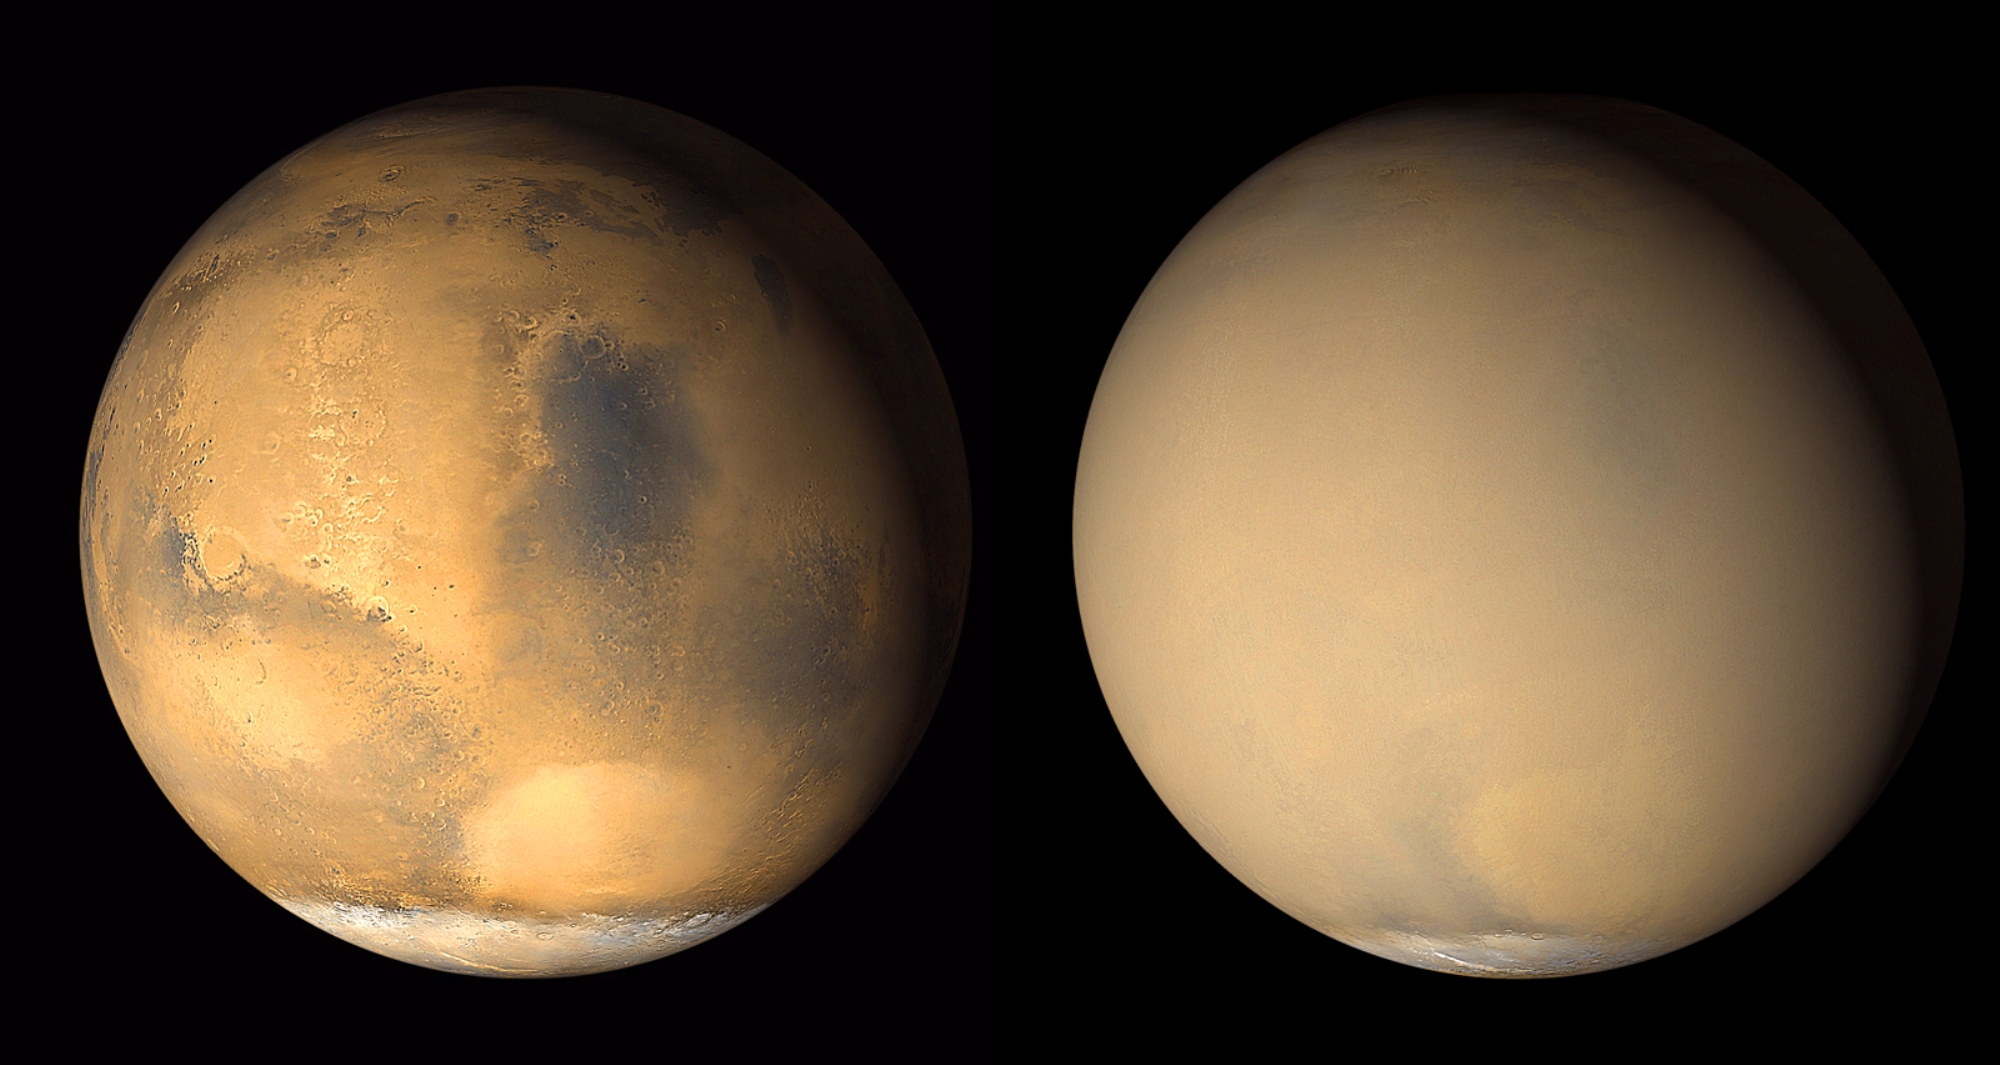 Deux images prises en 2001 par Mars Global Surveyor montrent un changement dramatique dans l'apparence de la Planète rouge lorsqu'une tempête de poussière initiée dans l'hémisphère sud de Mars est devenue planétaire. À gauche, une image à partir de fin juin 2001 révèle des conditions claires sur une grande partie de la planète, avec une tempête de poussière se produisant dans le bassin Hellas (lumineux caractéristique ovale) près du bord de la calotte polaire sud. À droite, une image en juillet 2001 montre la planète presque complètement enveloppée par la tempête de poussière qui s'étend à des altitudes de plus de 60 kilomètres. © Nasa